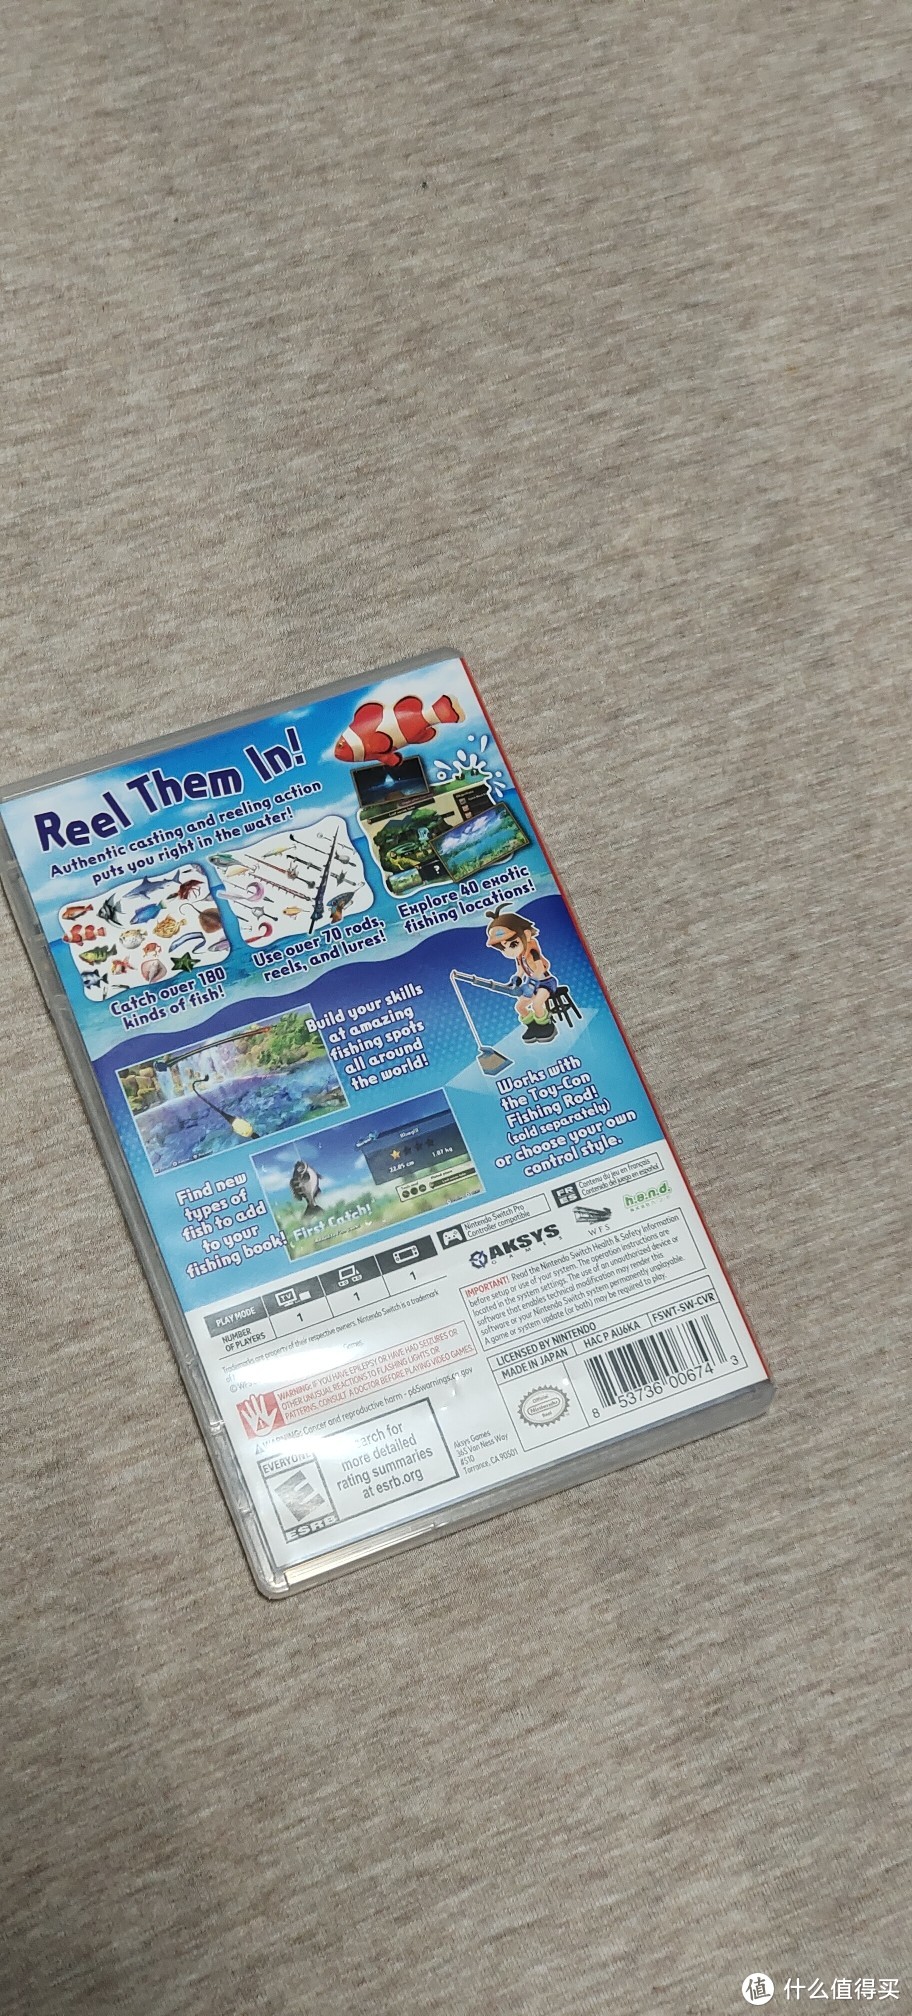 站在家里玩路亚/任天堂Nintendo Switch 游戏卡 体感游戏 游戏卡带 NS游戏卡 海外通用版 不支持电脑 钓鱼之星 